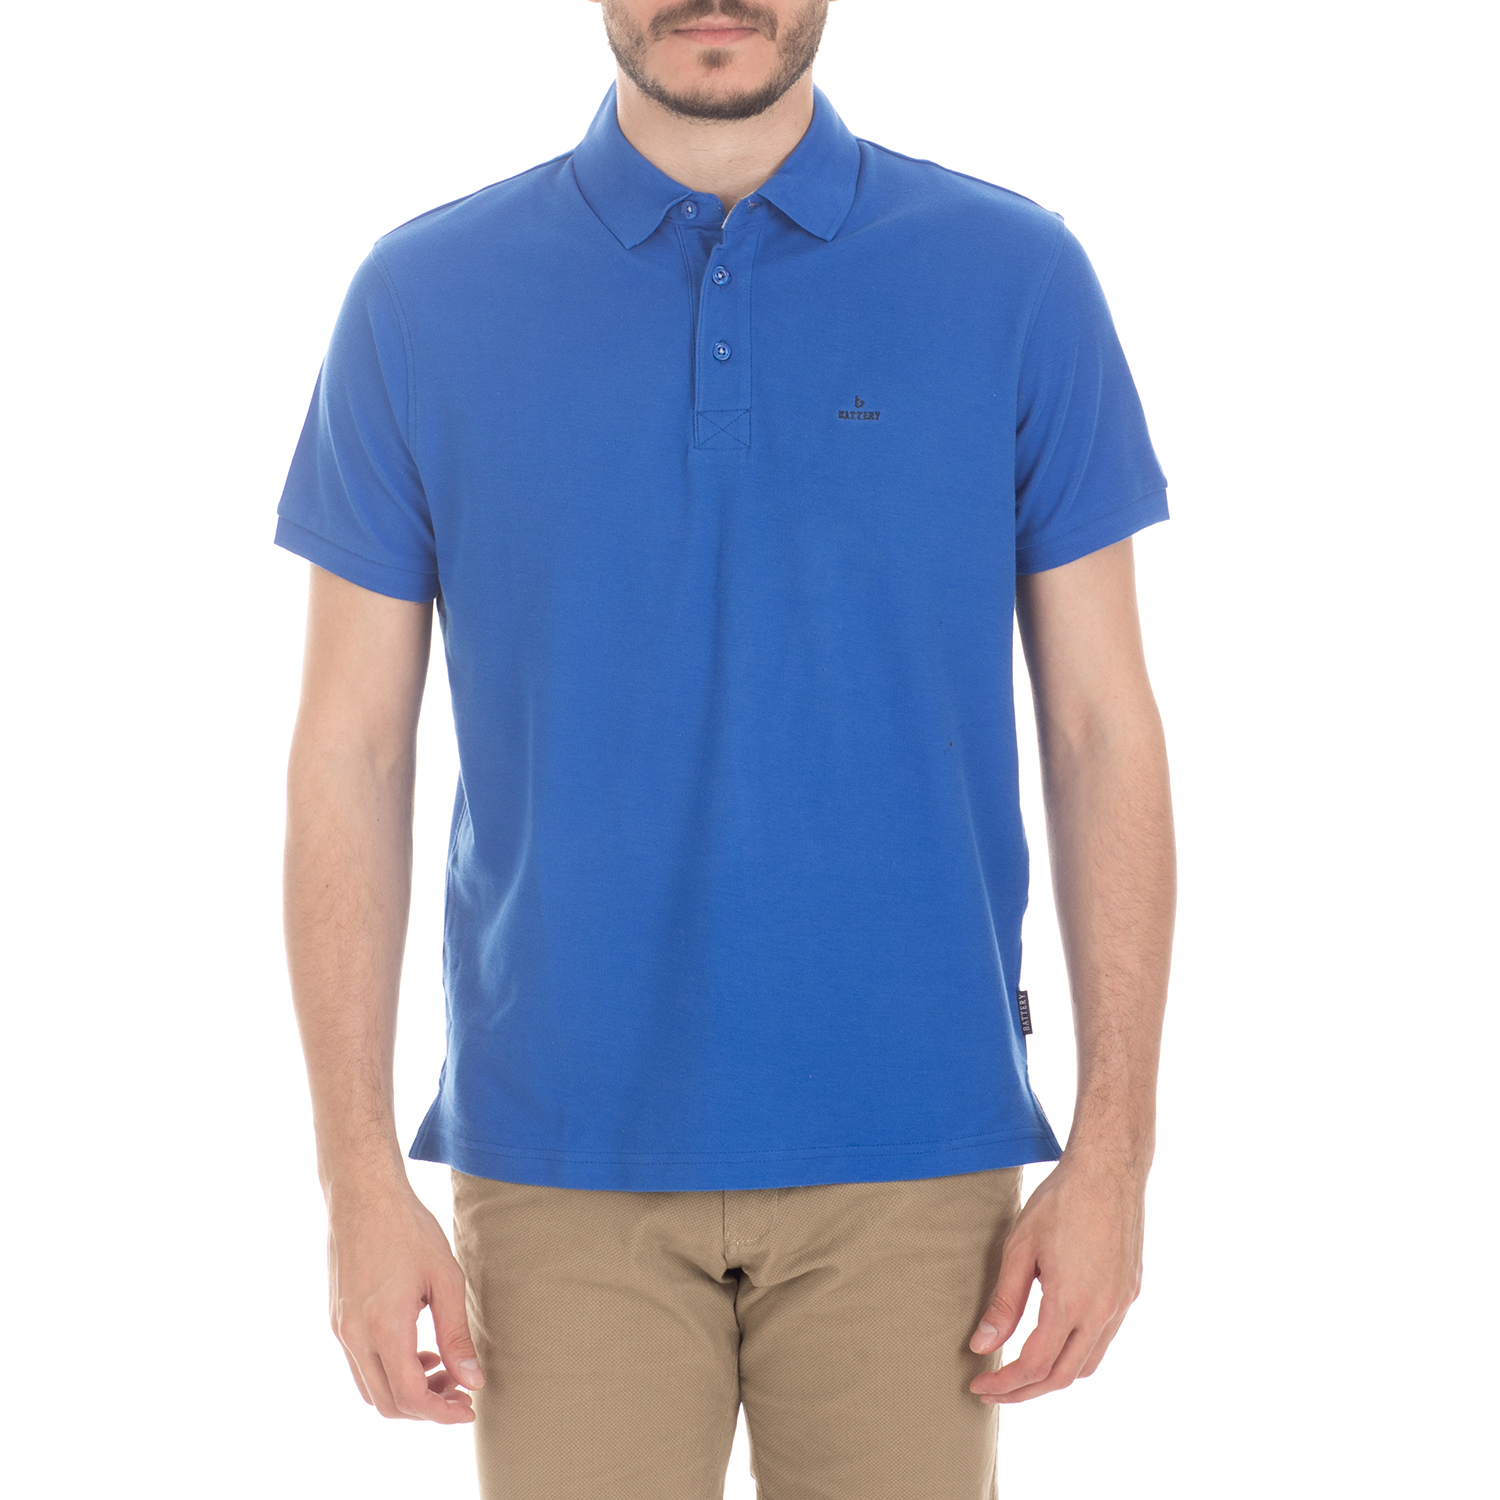 Ανδρικά/Ρούχα/Μπλούζες/Πόλο BATTERY - Ανδρική μπλούζα BATTERY μπλε